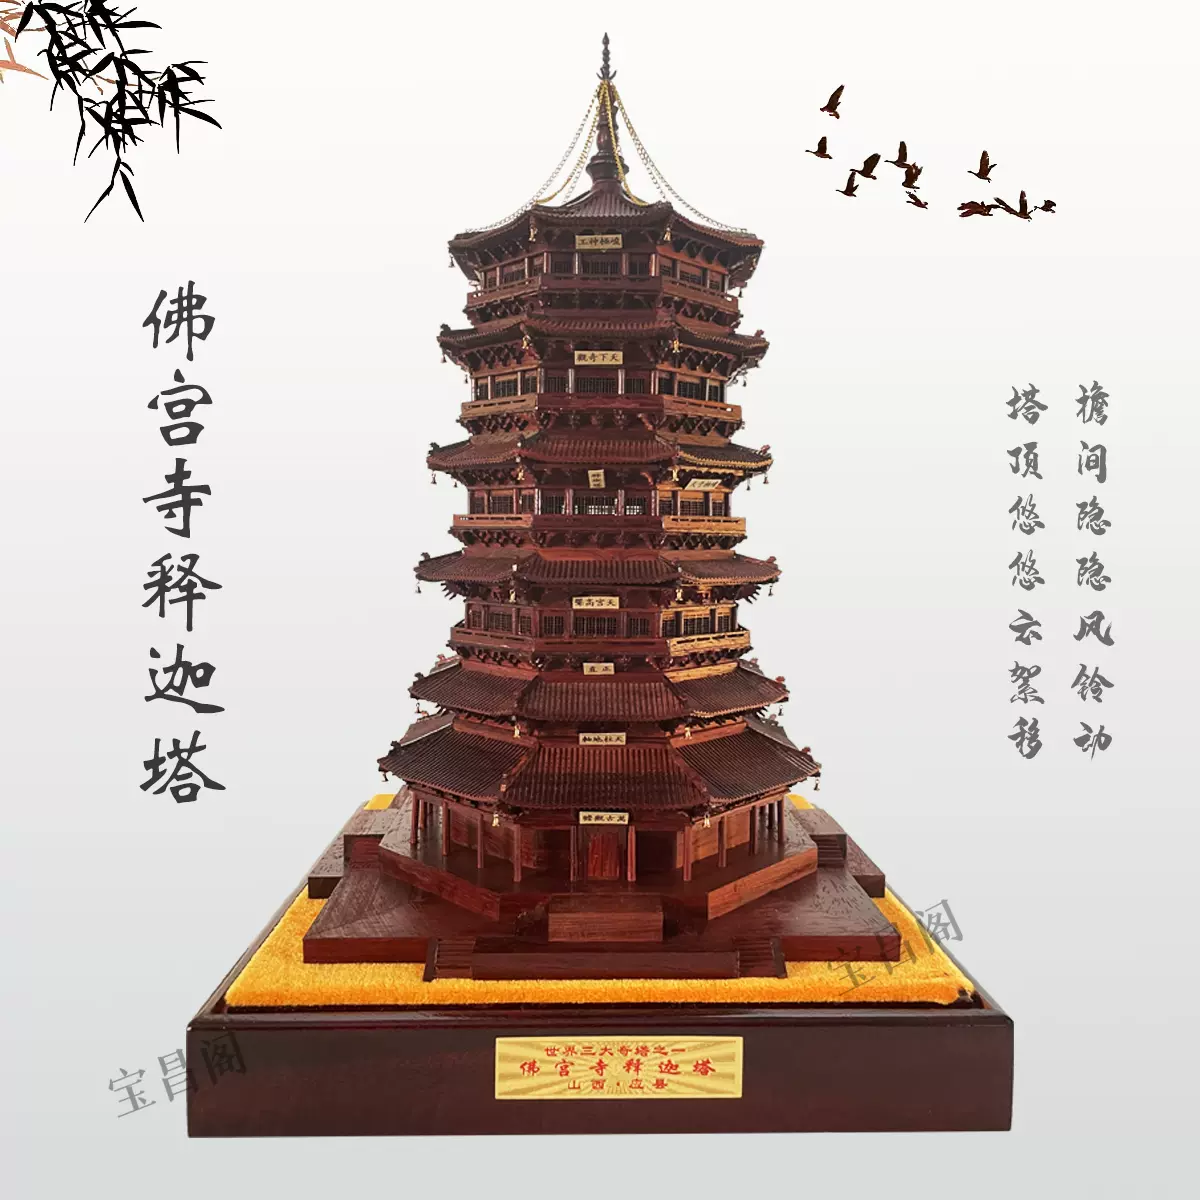 世界三大奇塔之一——应县木塔模型1:300-Taobao